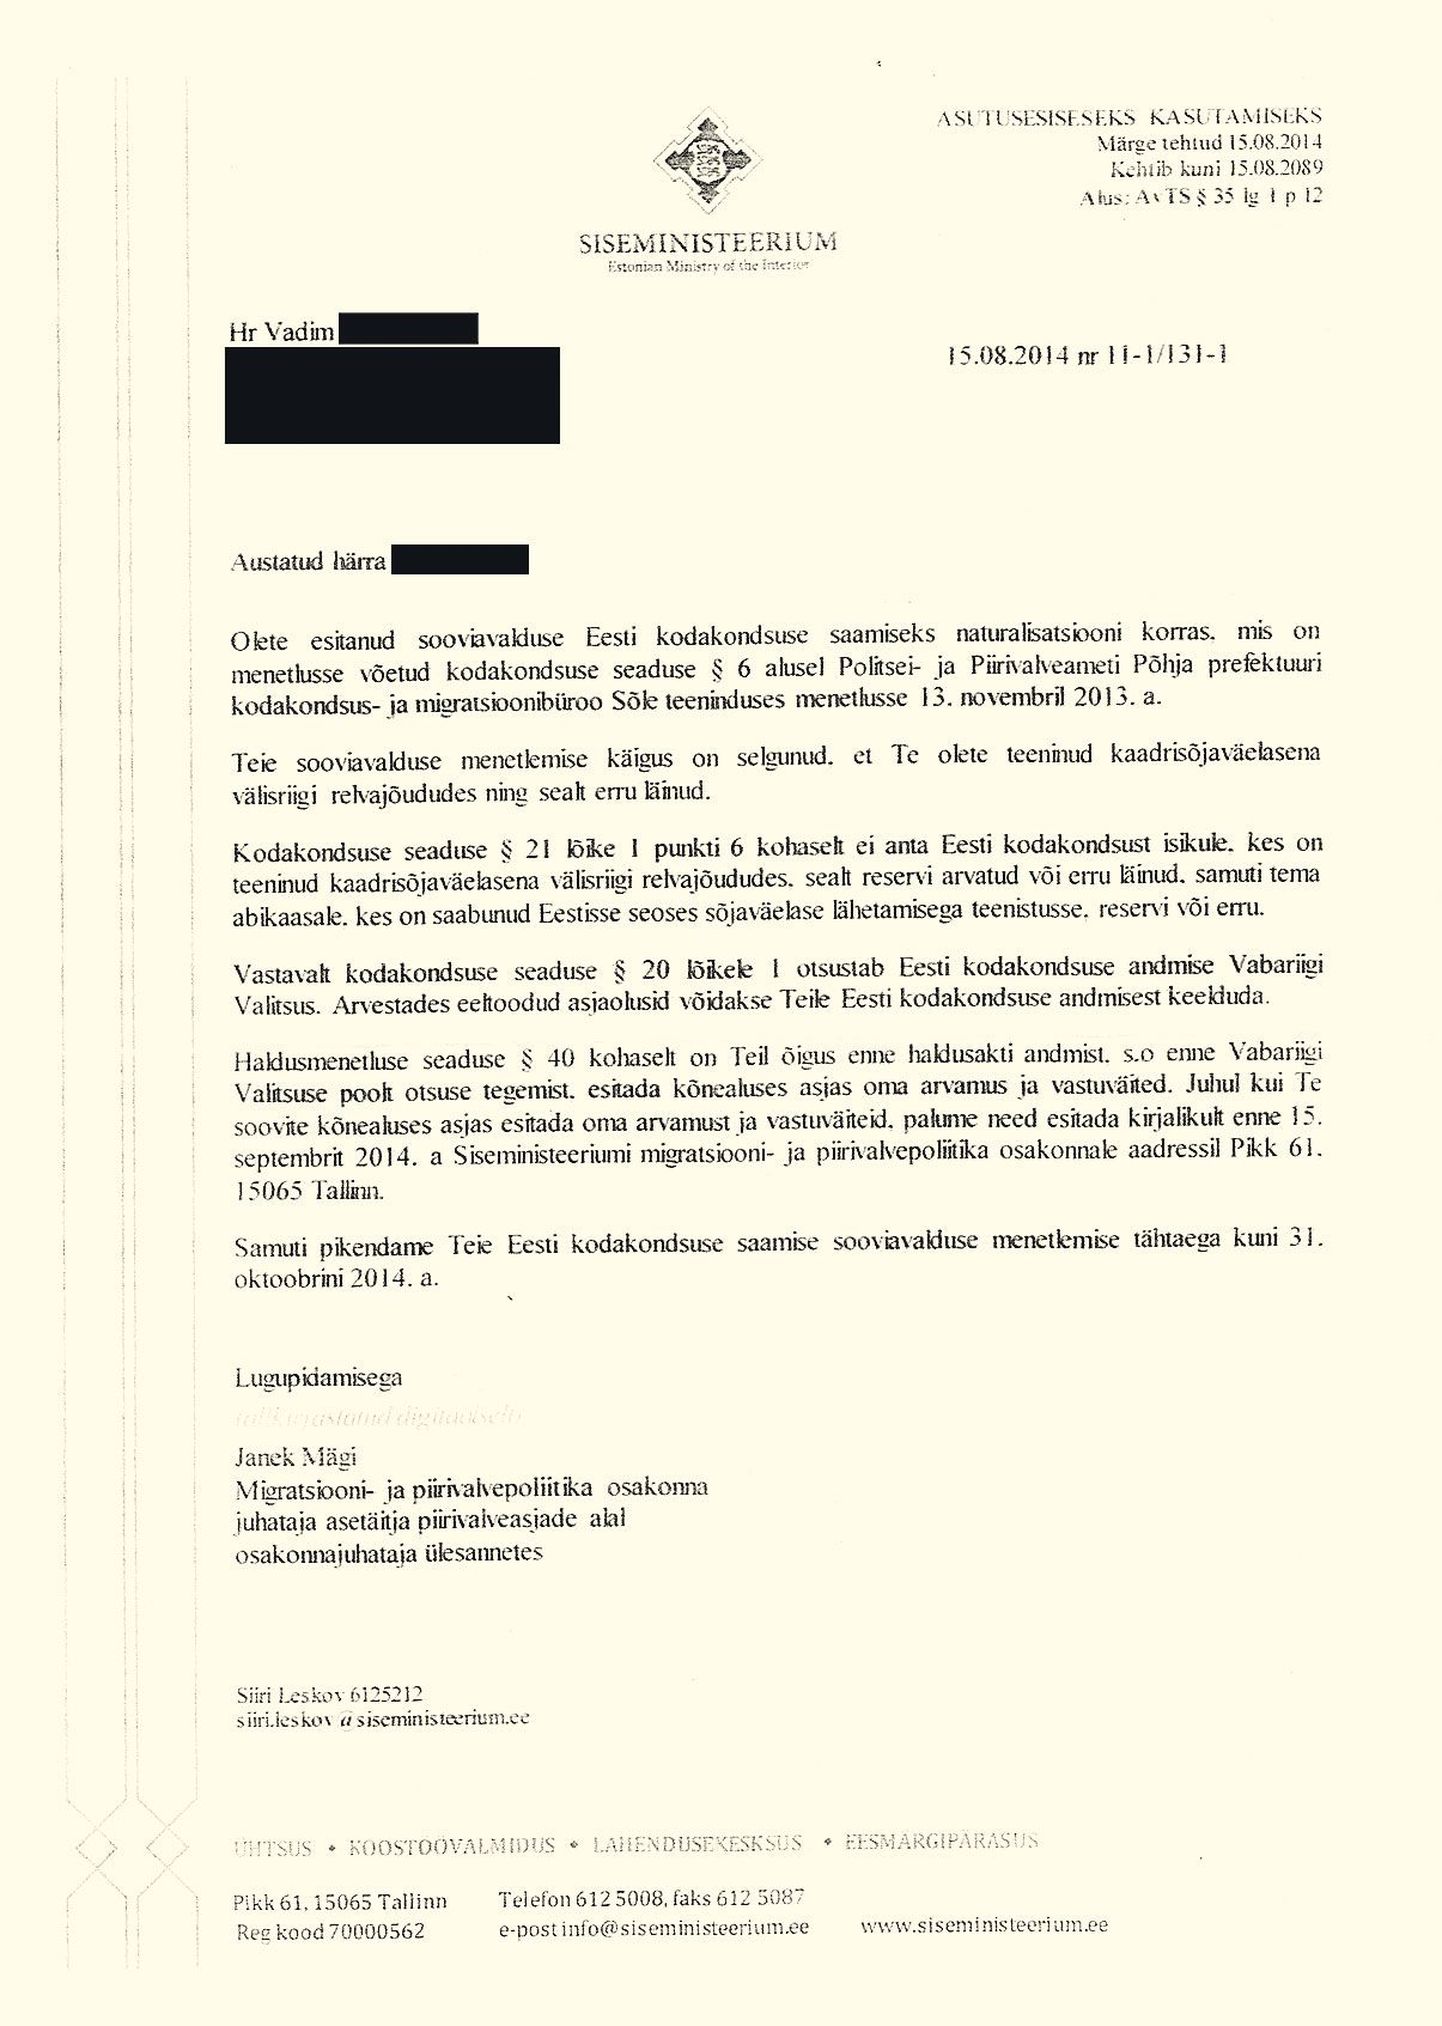 Справка от МВД в посольство РФ, что Вадим подал ходатайство на получение эстонского гражданства.